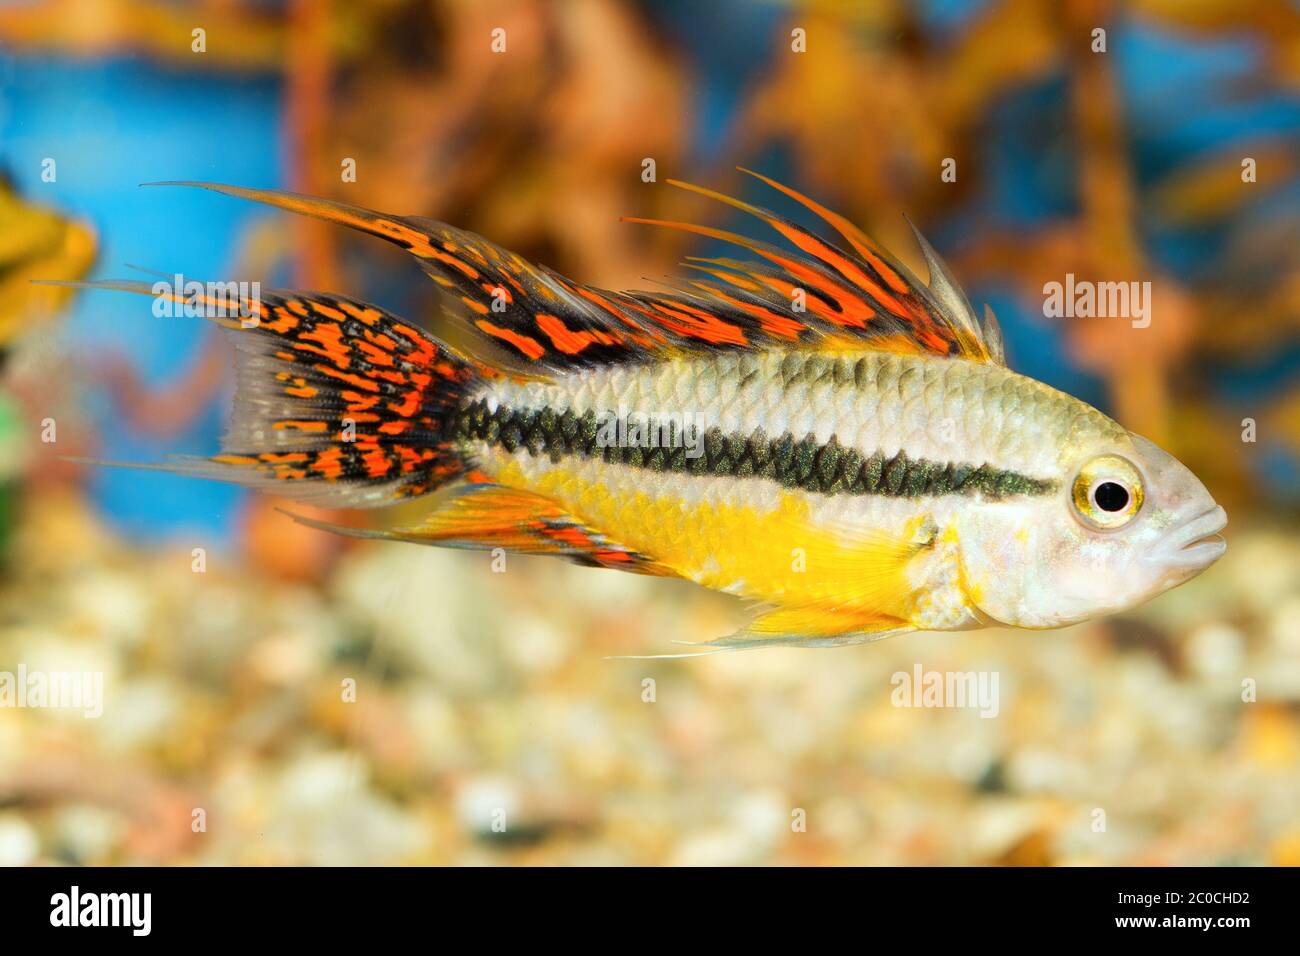 Apistogramma fish Stock Photo